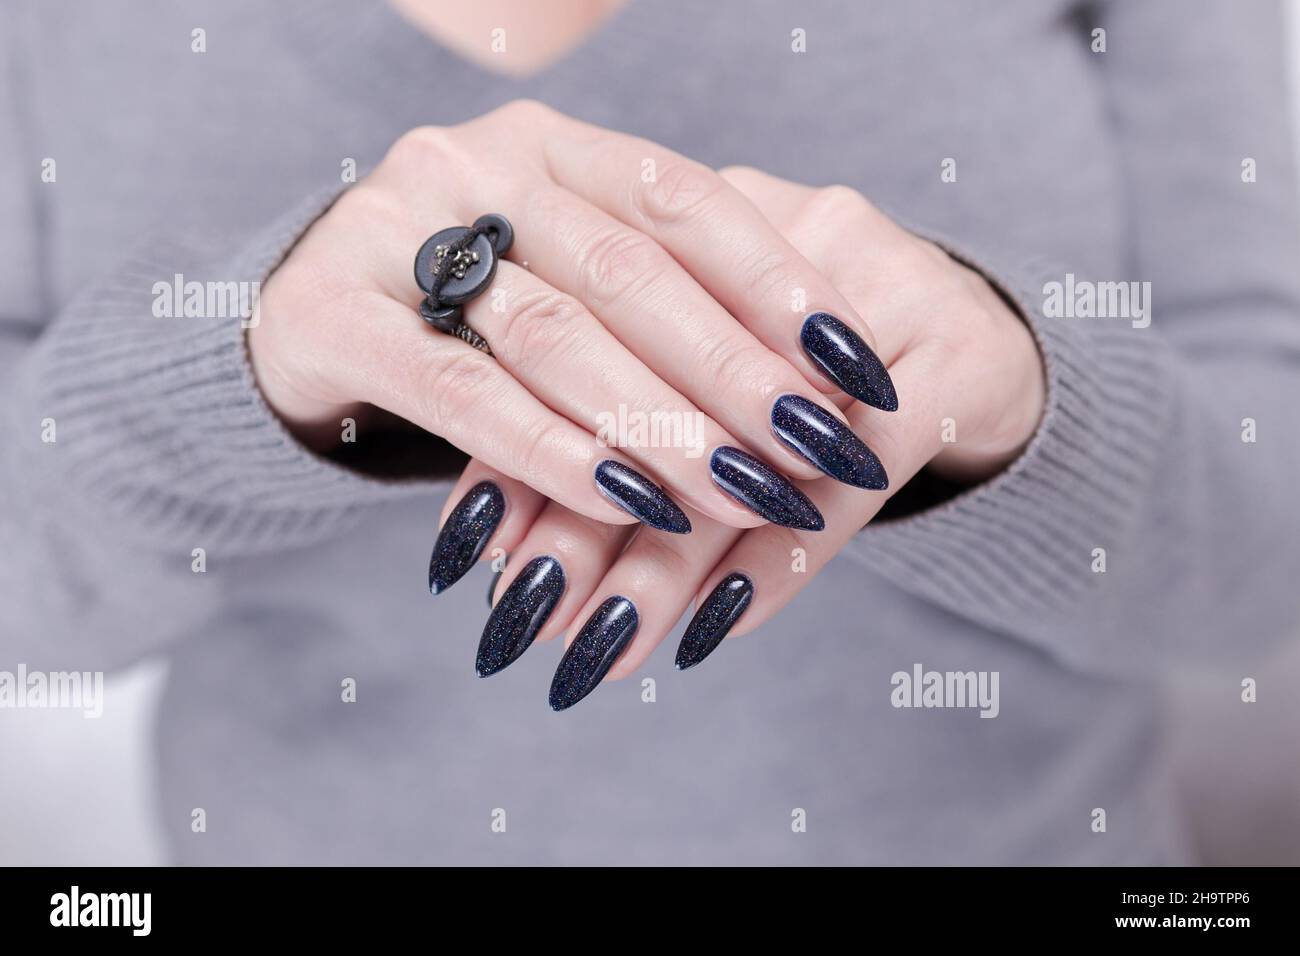 Weibliche Hand mit langen Nägeln und dunkelblauer schwarzer Maniküre hält  eine Flasche Nagellack Stockfotografie - Alamy